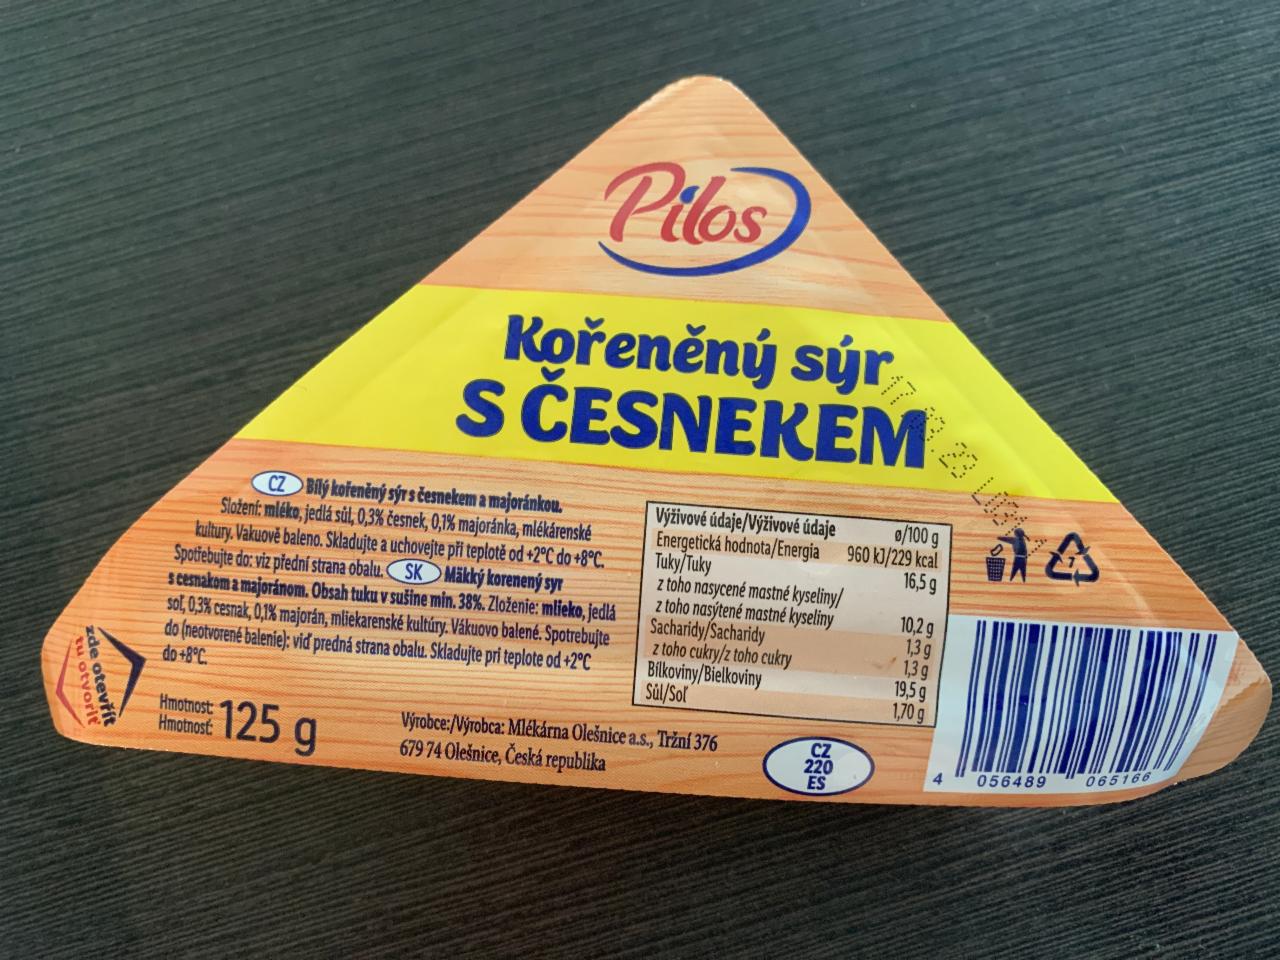 Fotografie - kořeněný sýr s česnekem Pilos